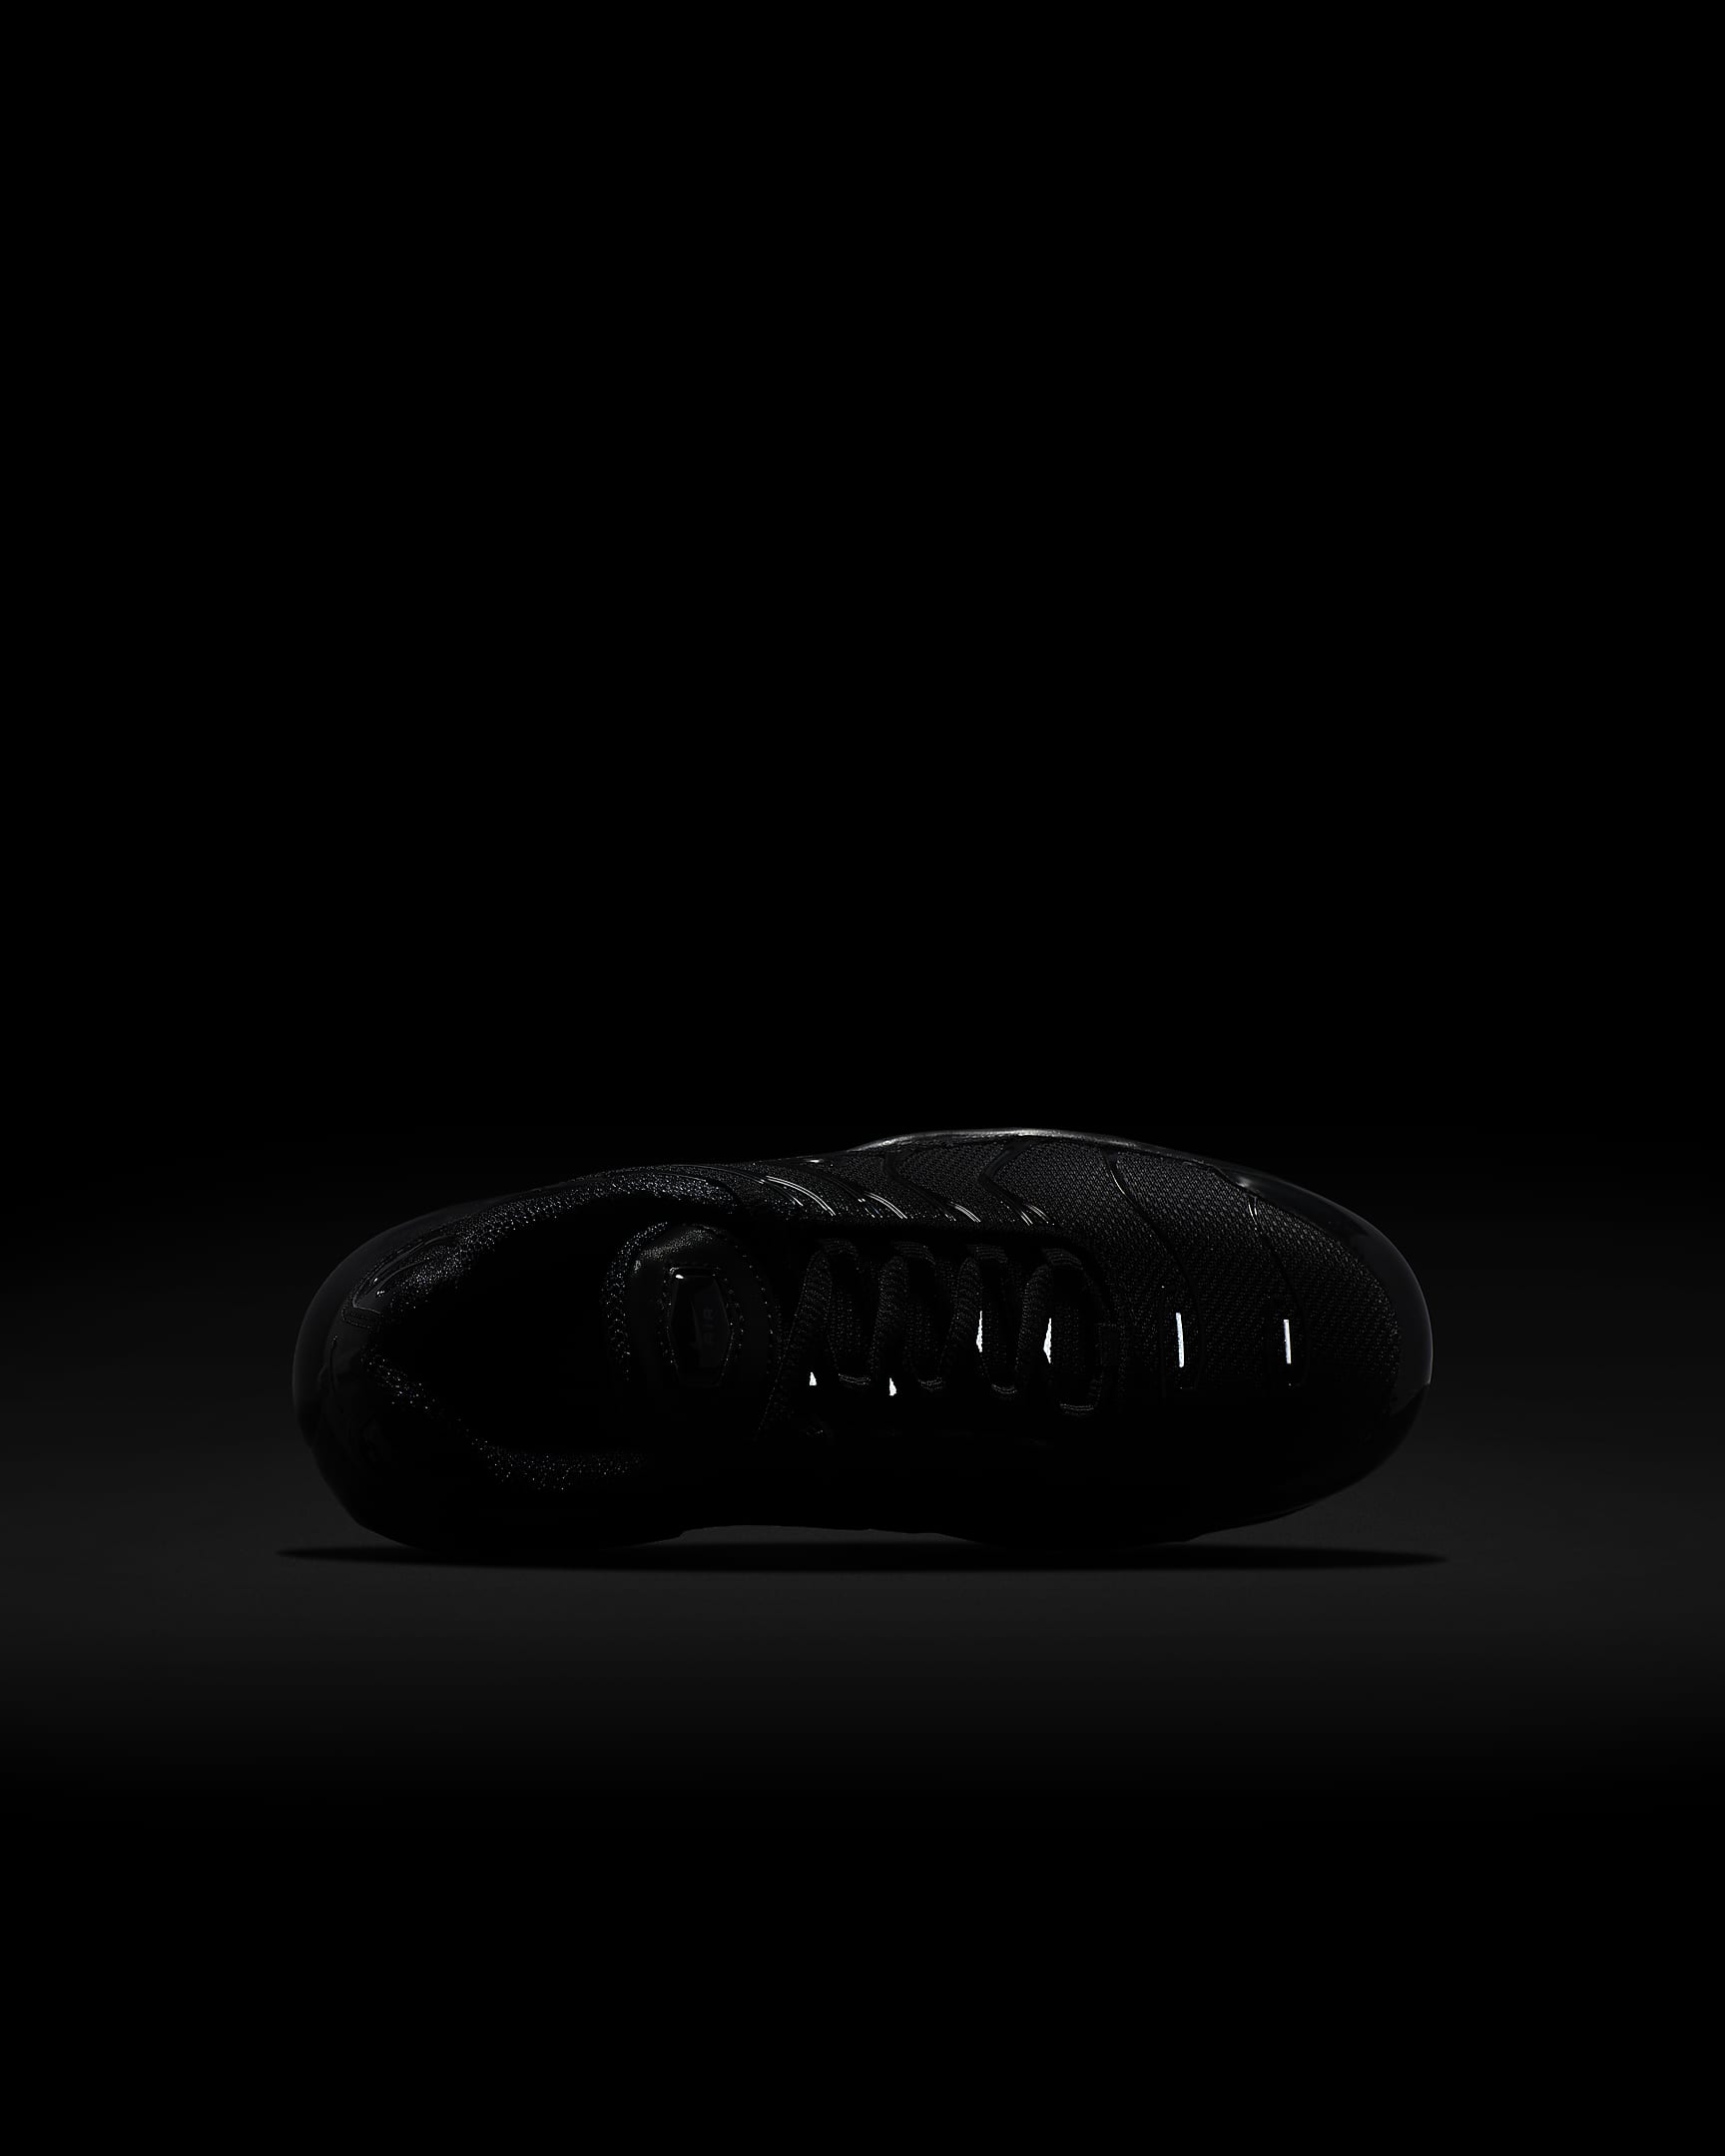 Chaussure Nike Air Max Plus pour enfant - Noir/Noir/Noir